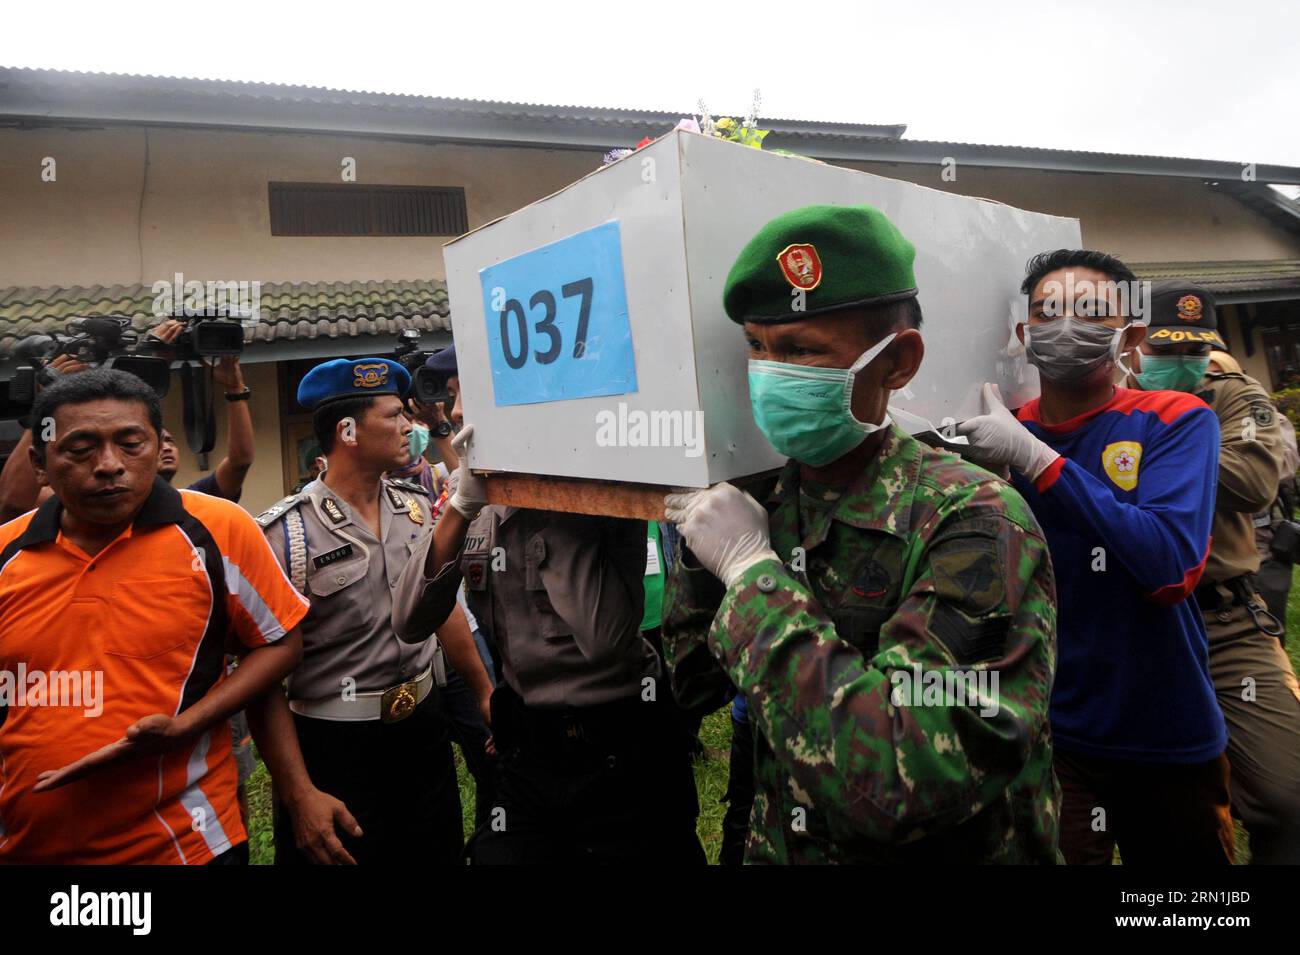 AKTUELLES ZEITGESCHEHEN Absturz von AirAsia-Flug QZ8501 - transport von Leichen nach Pangkalan Bun (150105) - PANGKALAN BUN, janvier 5. 2015 -- des militaires indonésiens et des volontaires transportent un cercueil contenant le corps d'une victime du vol QZ8501 d'AirAsia vers une ambulance à Pangkalan Bun, en Indonésie. 5 janvier 2015. Trois corps de victimes de l accident d AirAsia ont été livrés lundi au centre de recherche AirAsia en Indonésie par un hélicoptère exploité par l Agence nationale indonésienne de recherche et de sauvetage (BASARNAS), portant le nombre de corps envoyés au poste de commandement d évacuation à 37. INDONESIA-PANGKALAN Banque D'Images